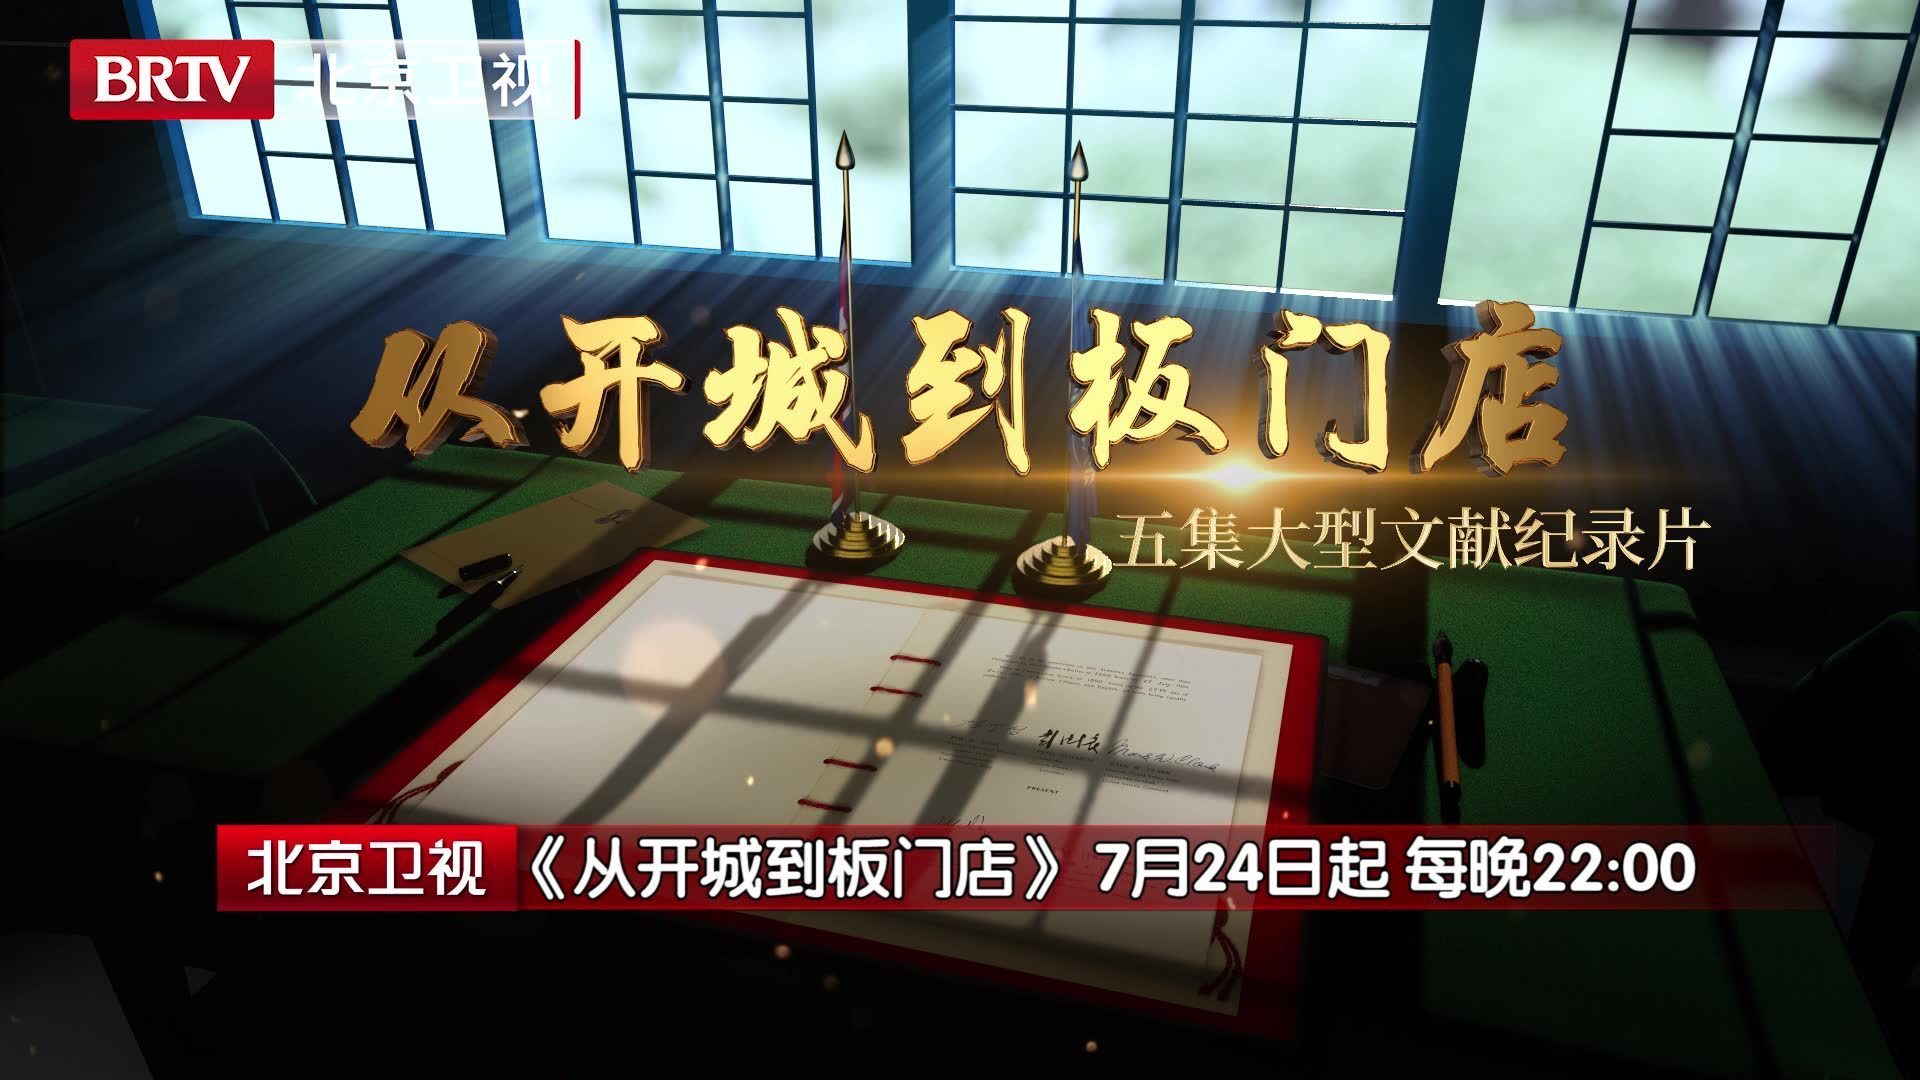 北京广播电视台五集大型文献纪录片《从开城到板门店》今晚22:00开播